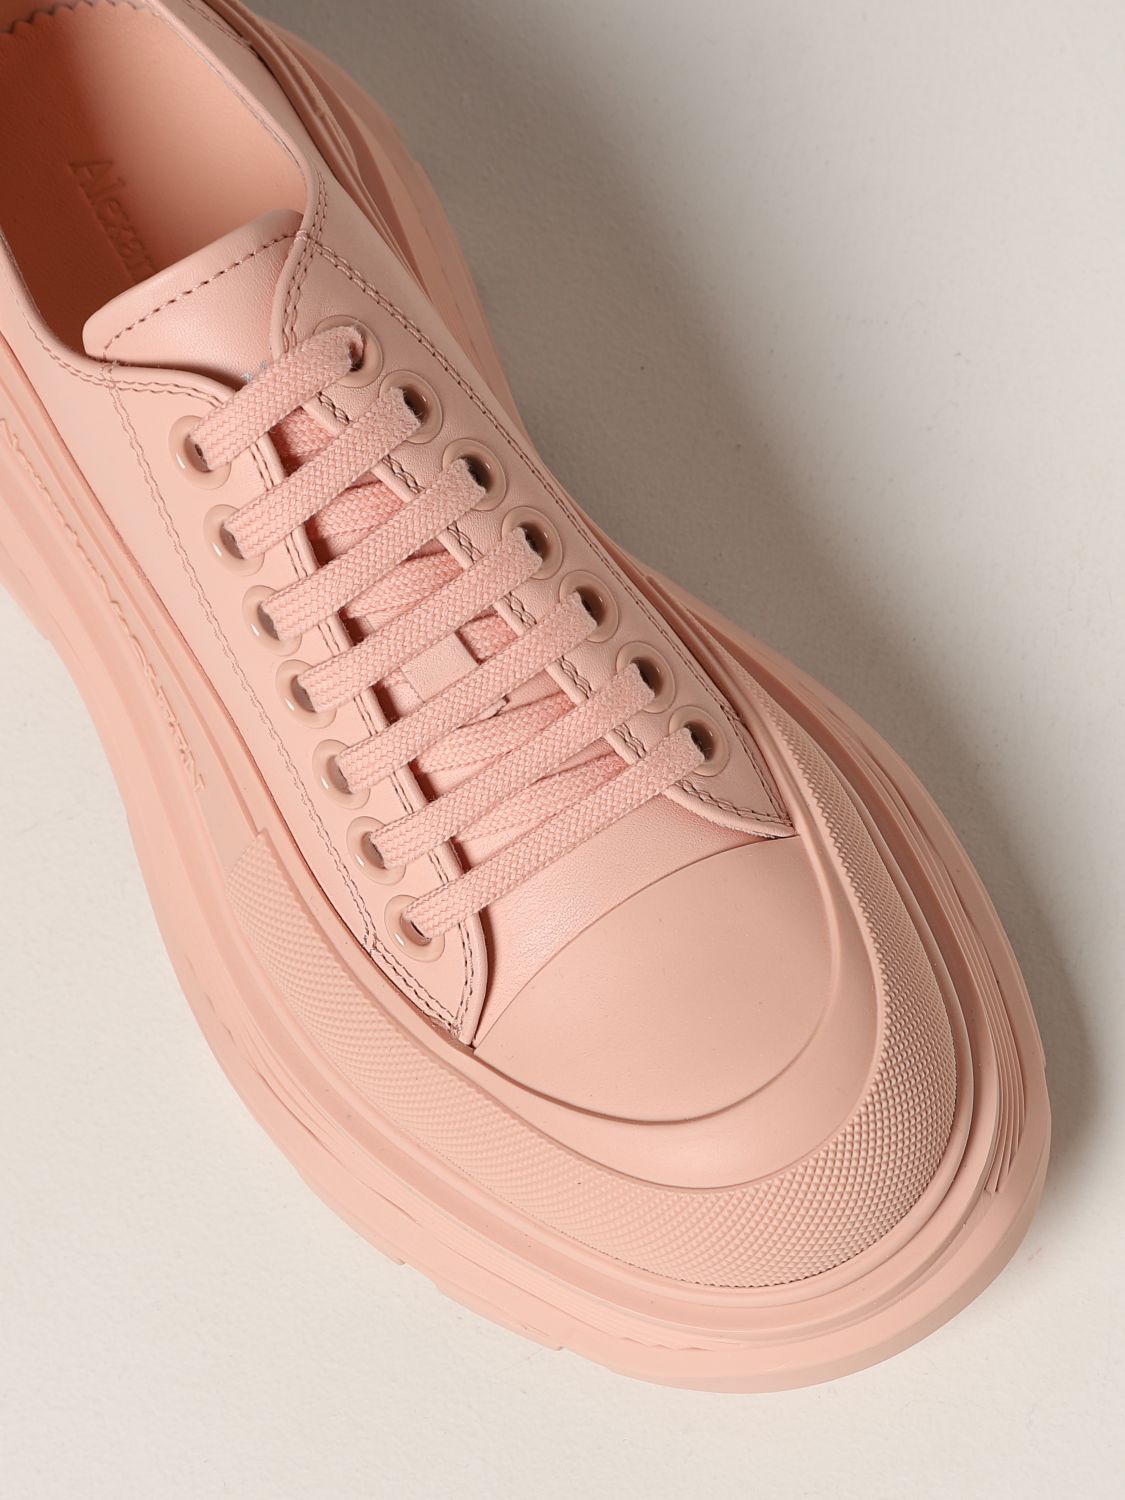 Alexander McQueen women's leather/mesh sneakers beige/pink